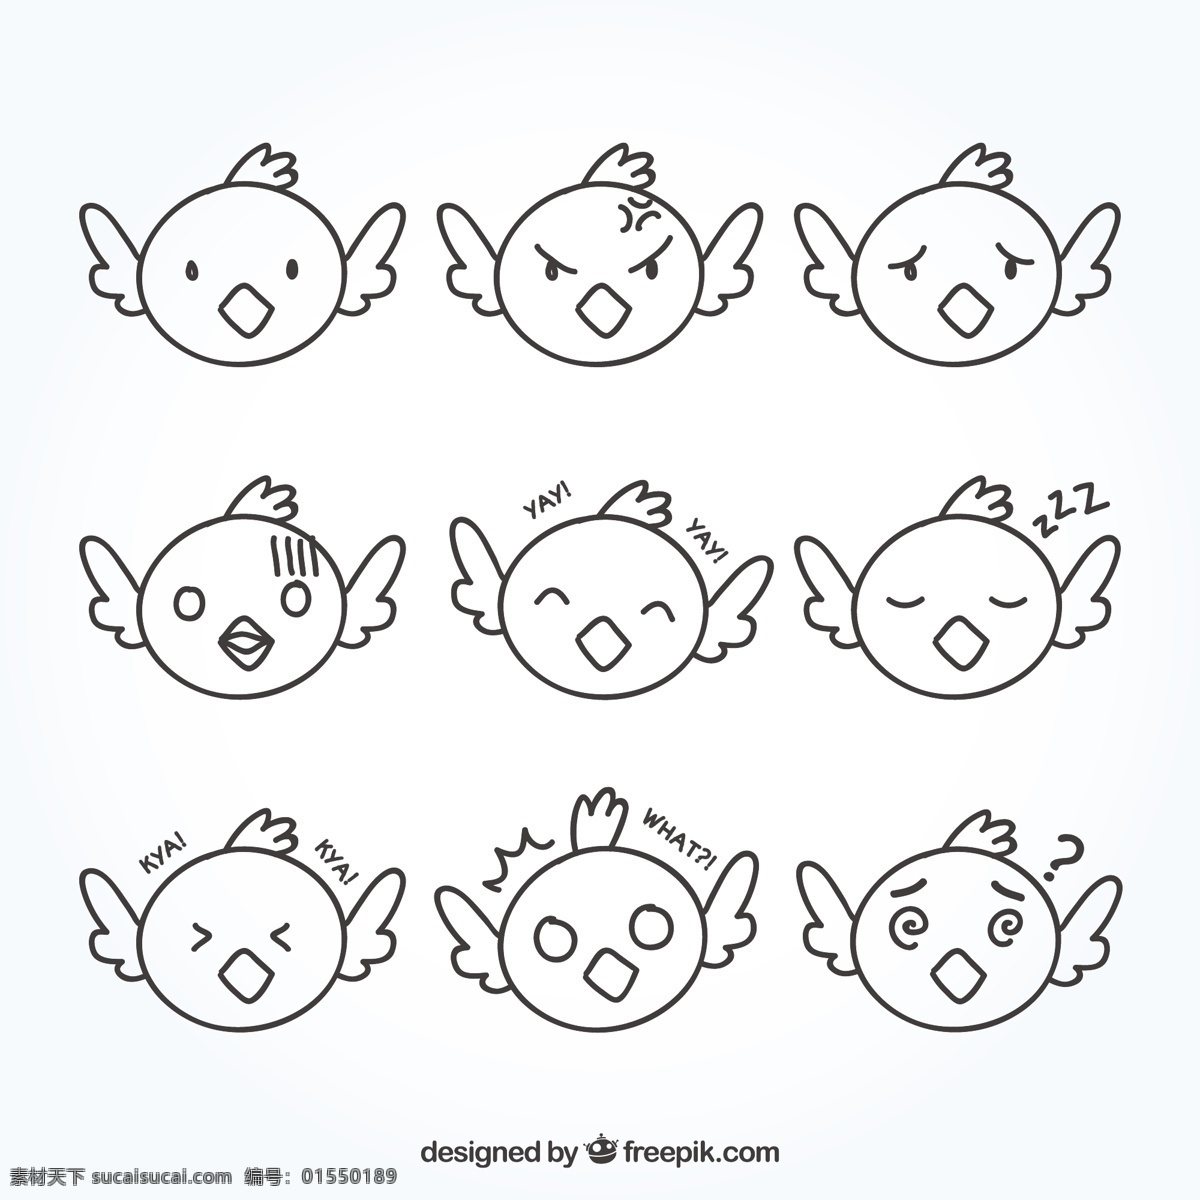 套 手绘 母鸡 笑脸 手 动物 鸡 脸 可爱 微笑 快乐 绘画 有趣 人物 情感 可爱的动物 表情 快乐的脸 笑